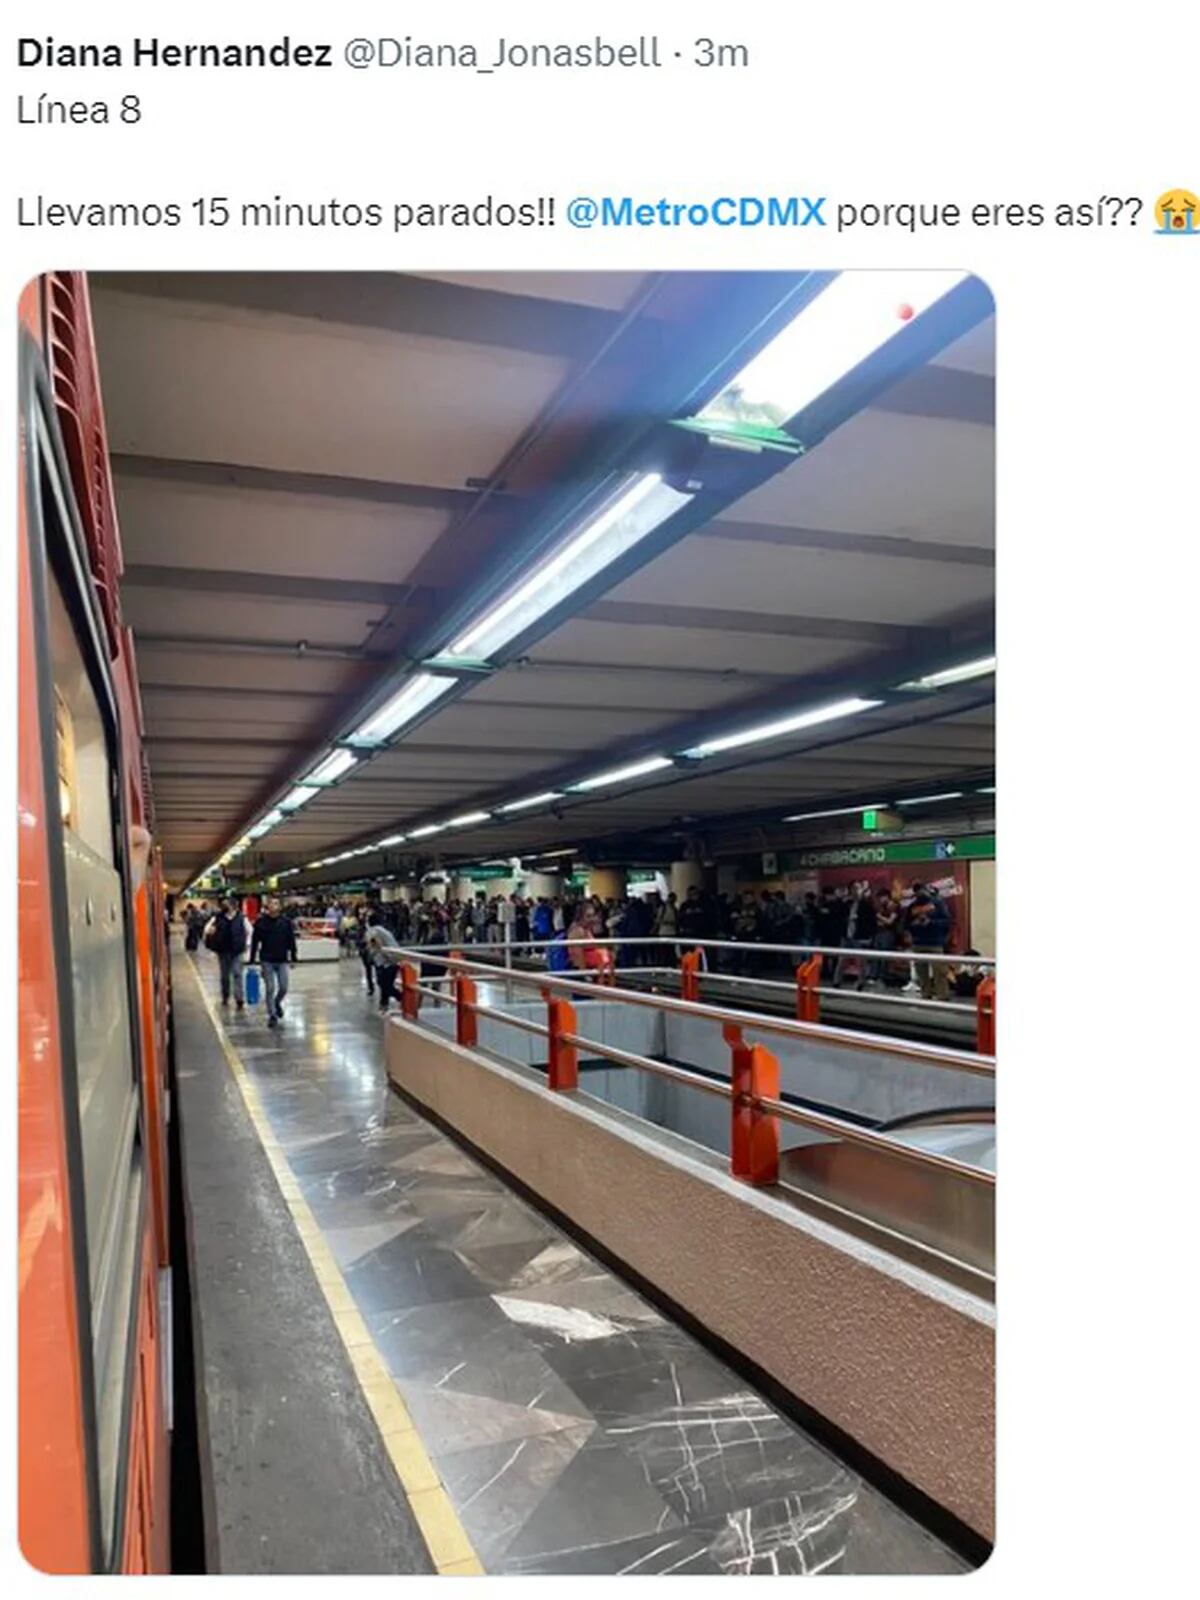 Línea 8 del Metro de la CDMX. 